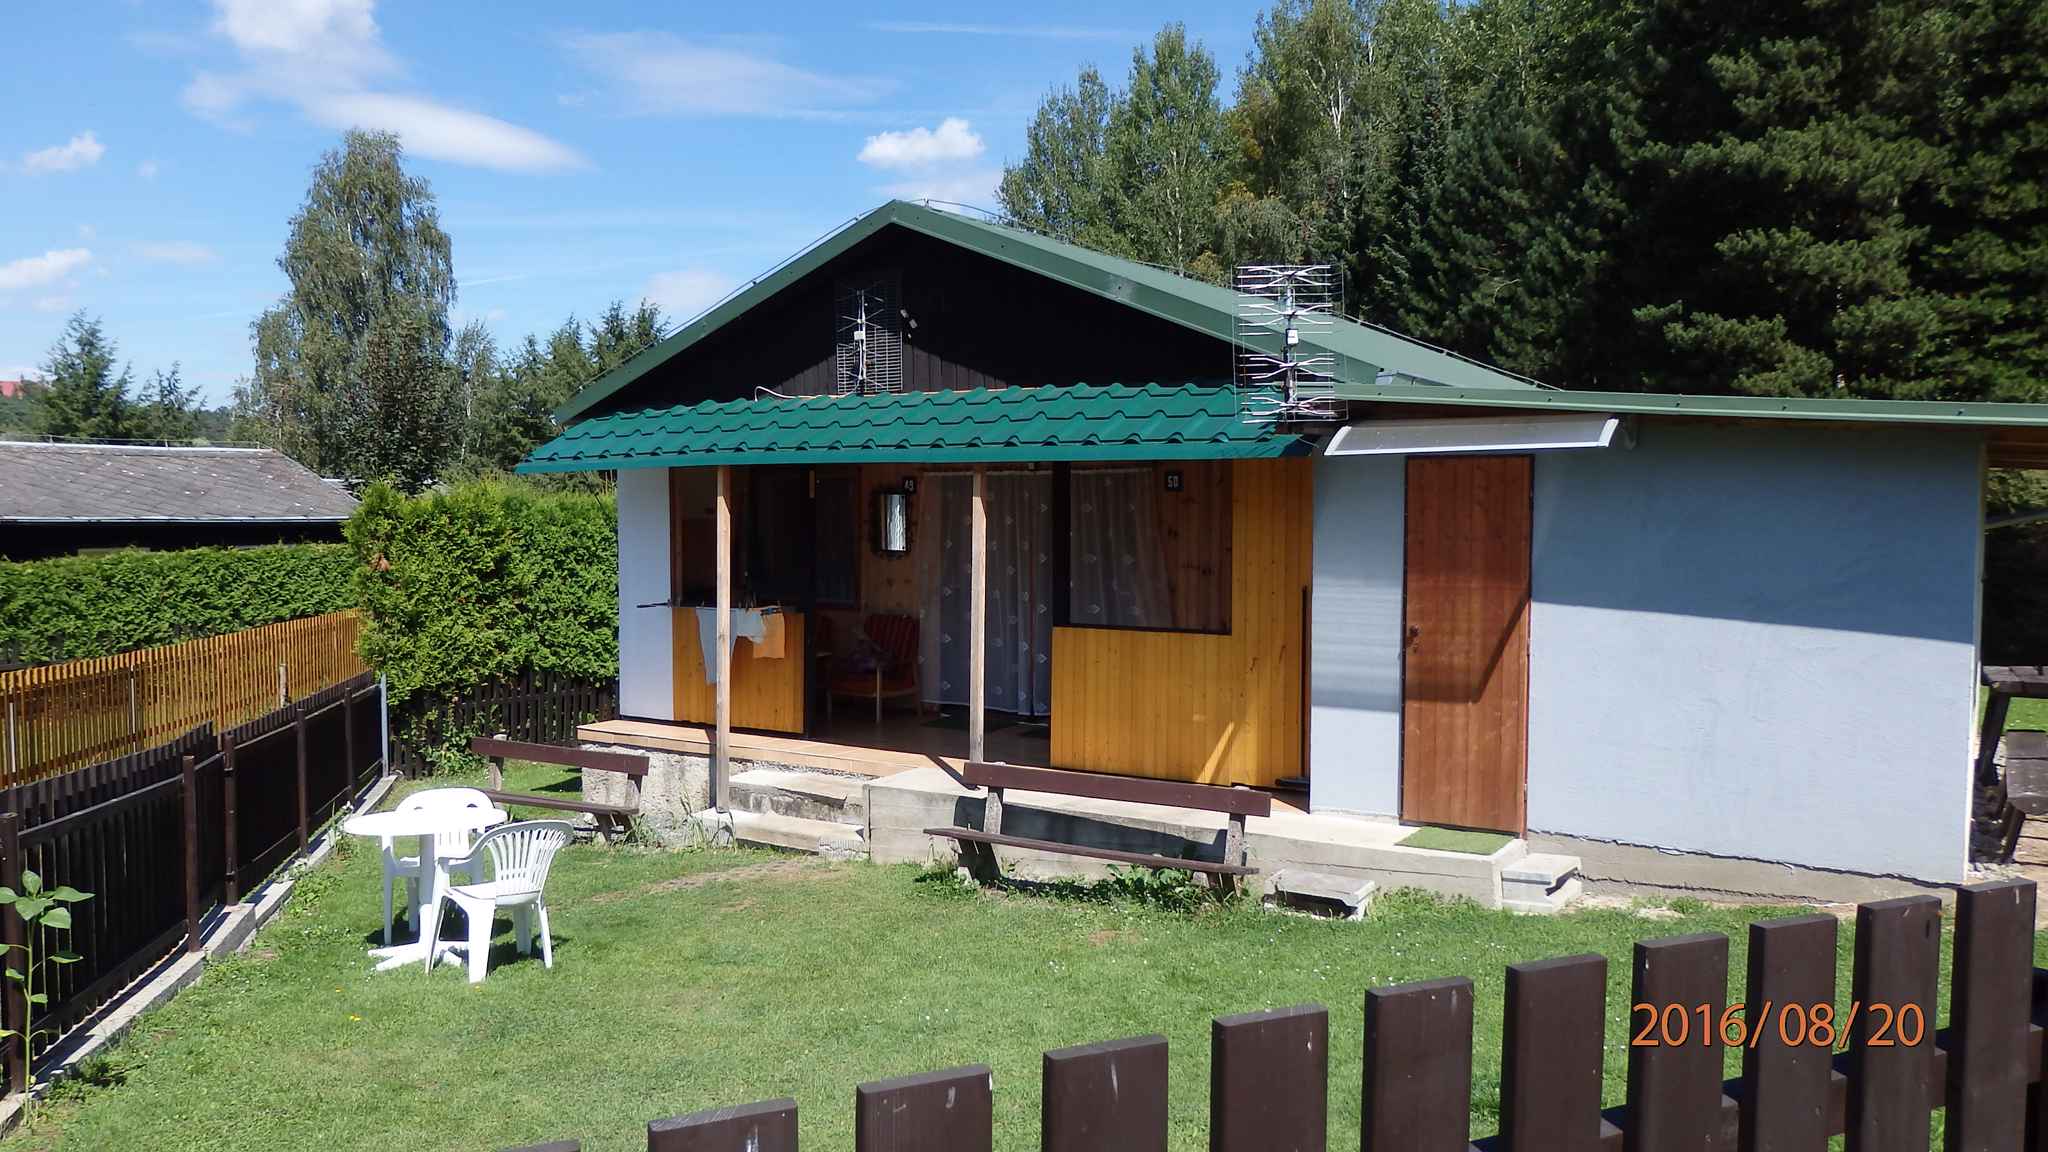 Hütte in einem Schutzgebiet Ferienhaus in Südböhmen